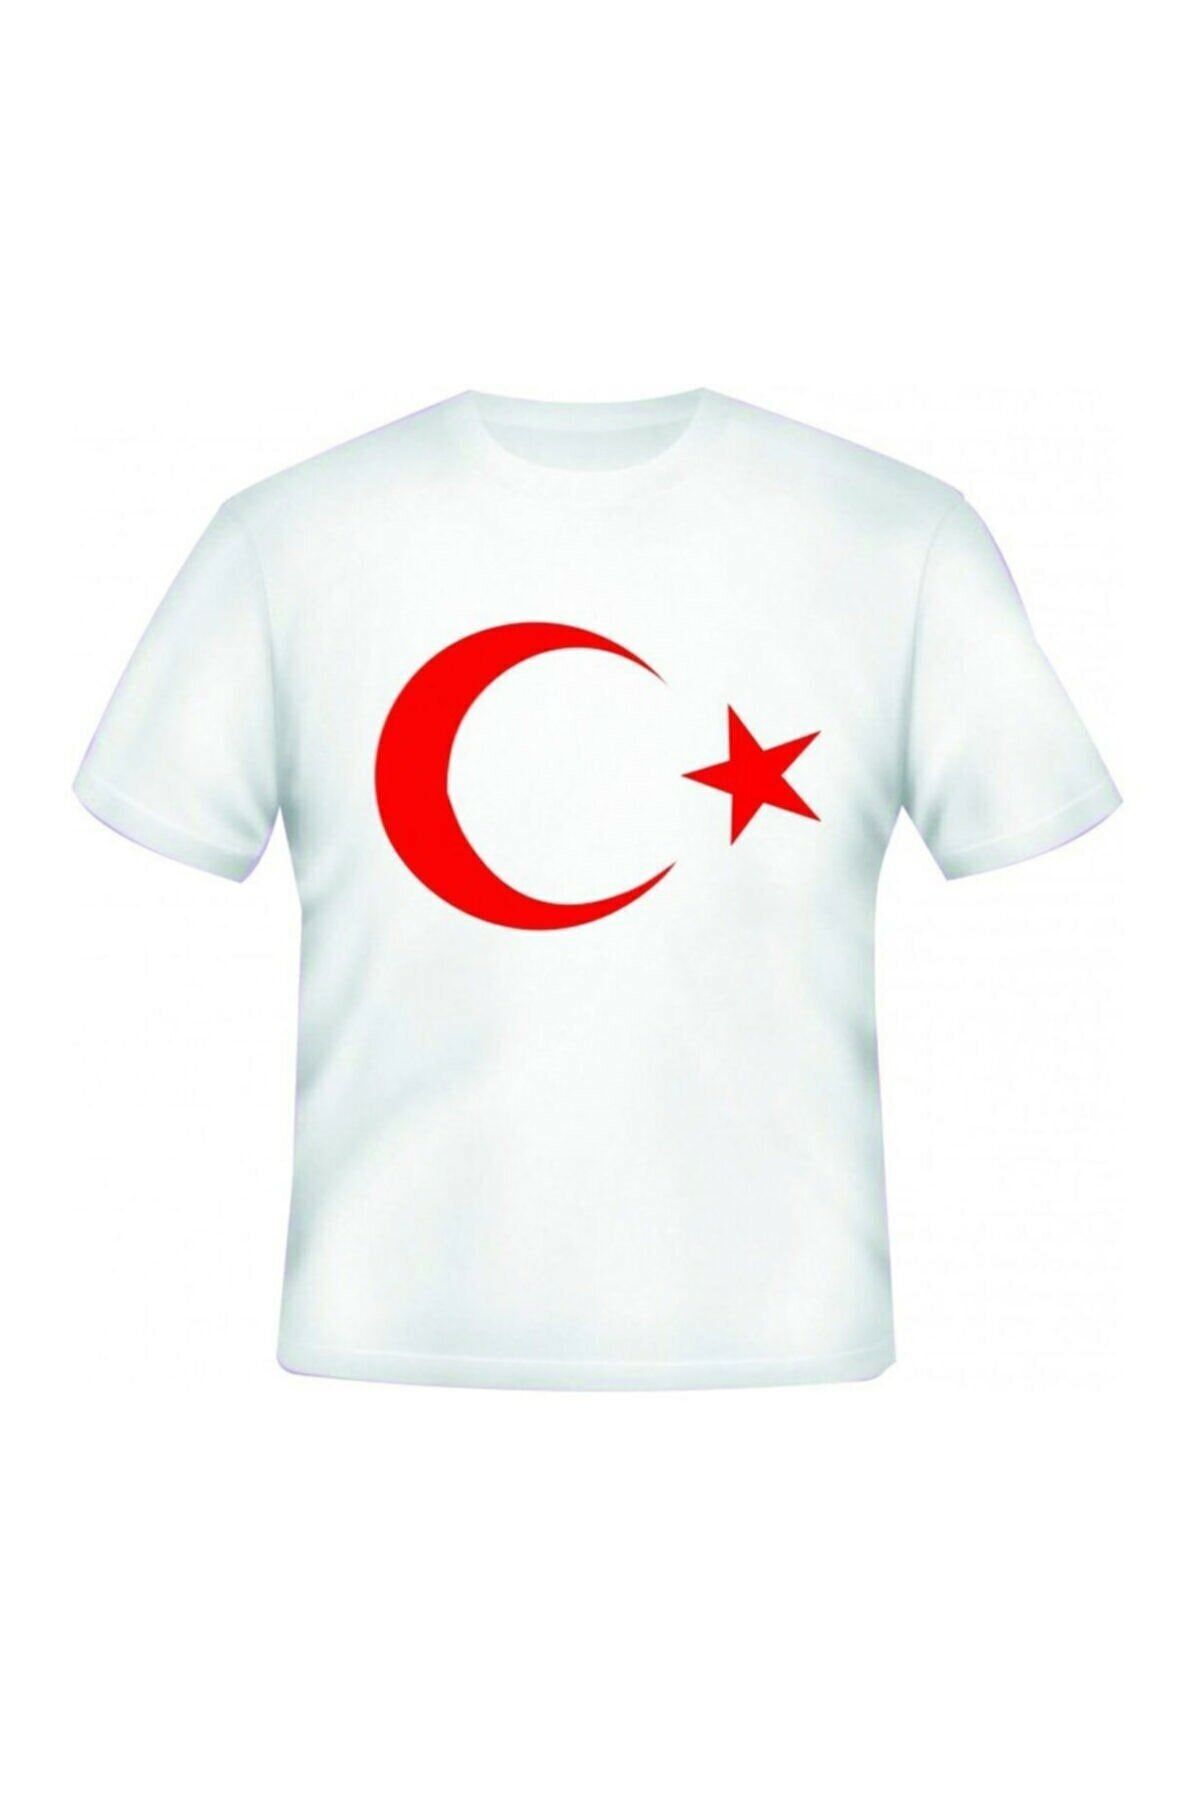 Dragora Unısex Çocuk Ay Yıldızlı Bayrak Baskılı Likralı Süper Compac Penye Beyaz T-shirt